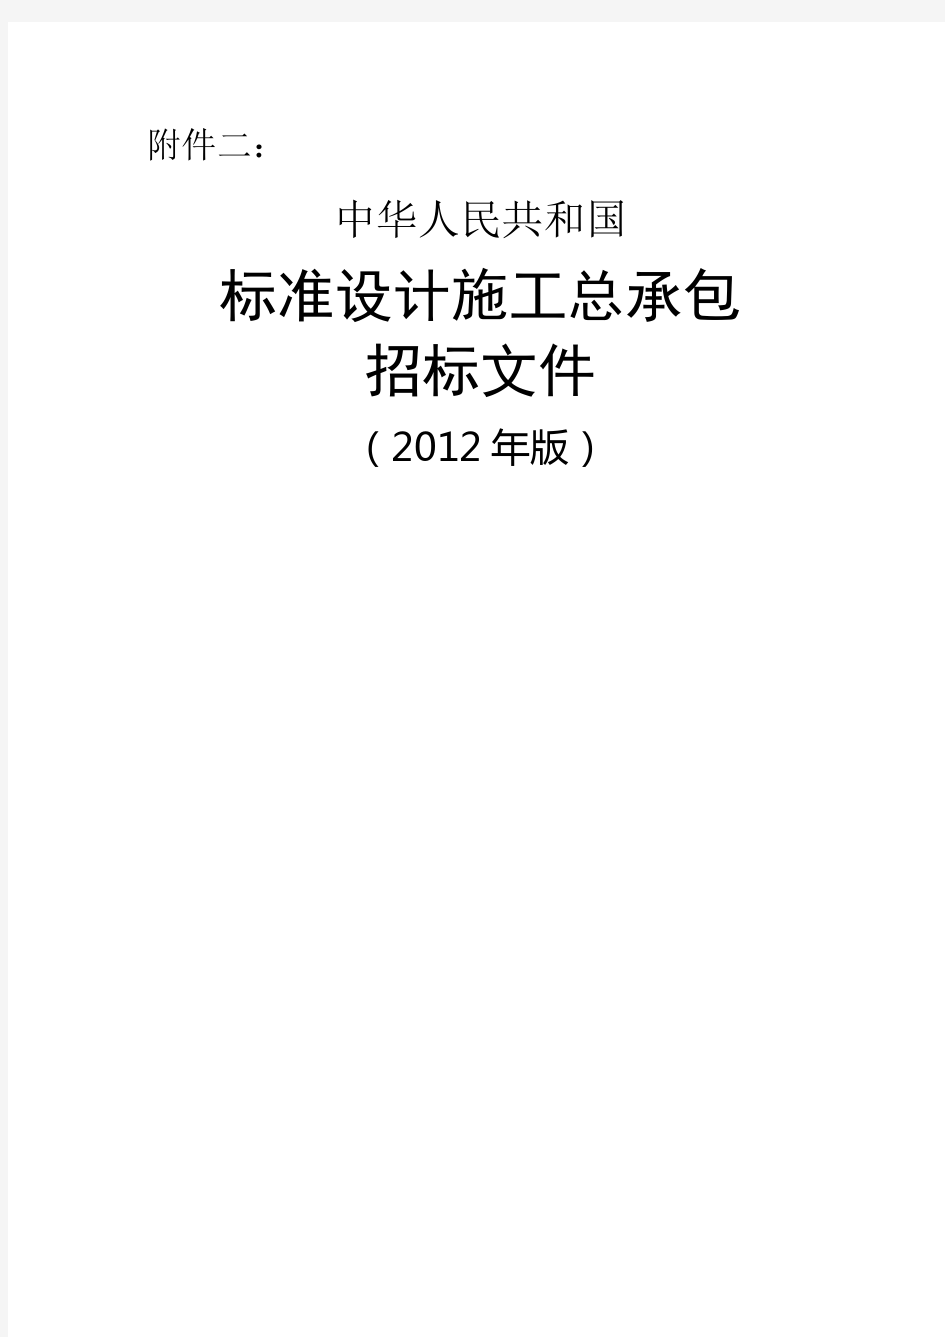 《中华人民共和国标准设计施工总承包招标文件》版